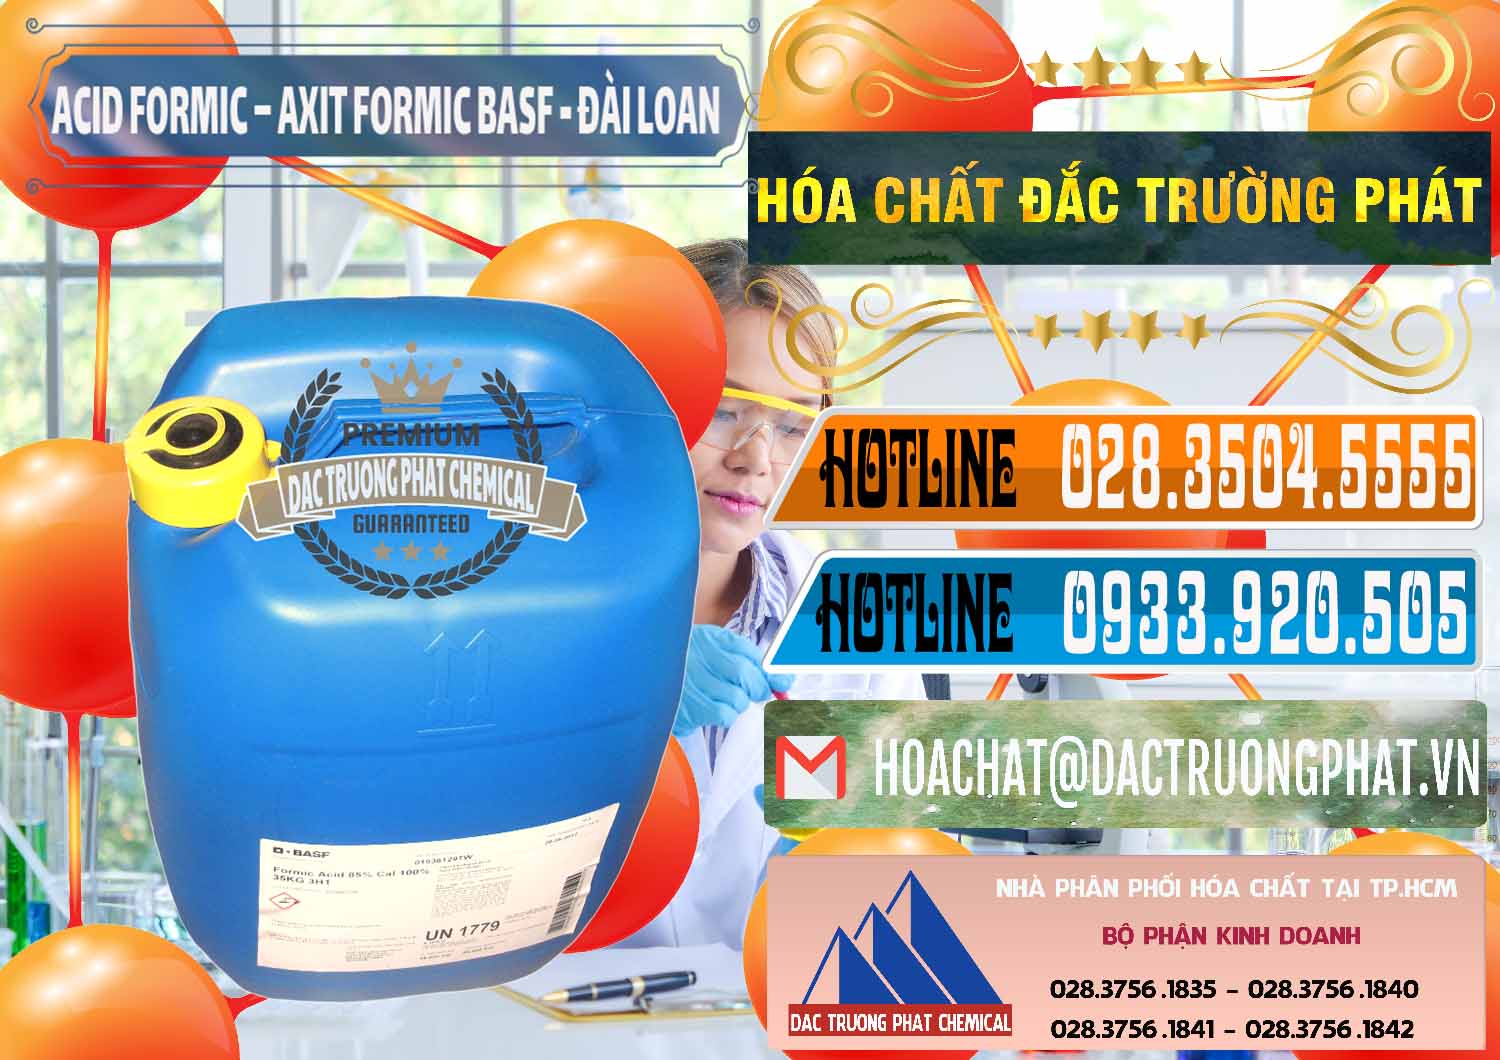 Nơi chuyên kinh doanh - bán Acid Formic - Axit Formic 85% BASF Đài Loan Taiwan - 0027 - Cty phân phối ( cung cấp ) hóa chất tại TP.HCM - stmp.net